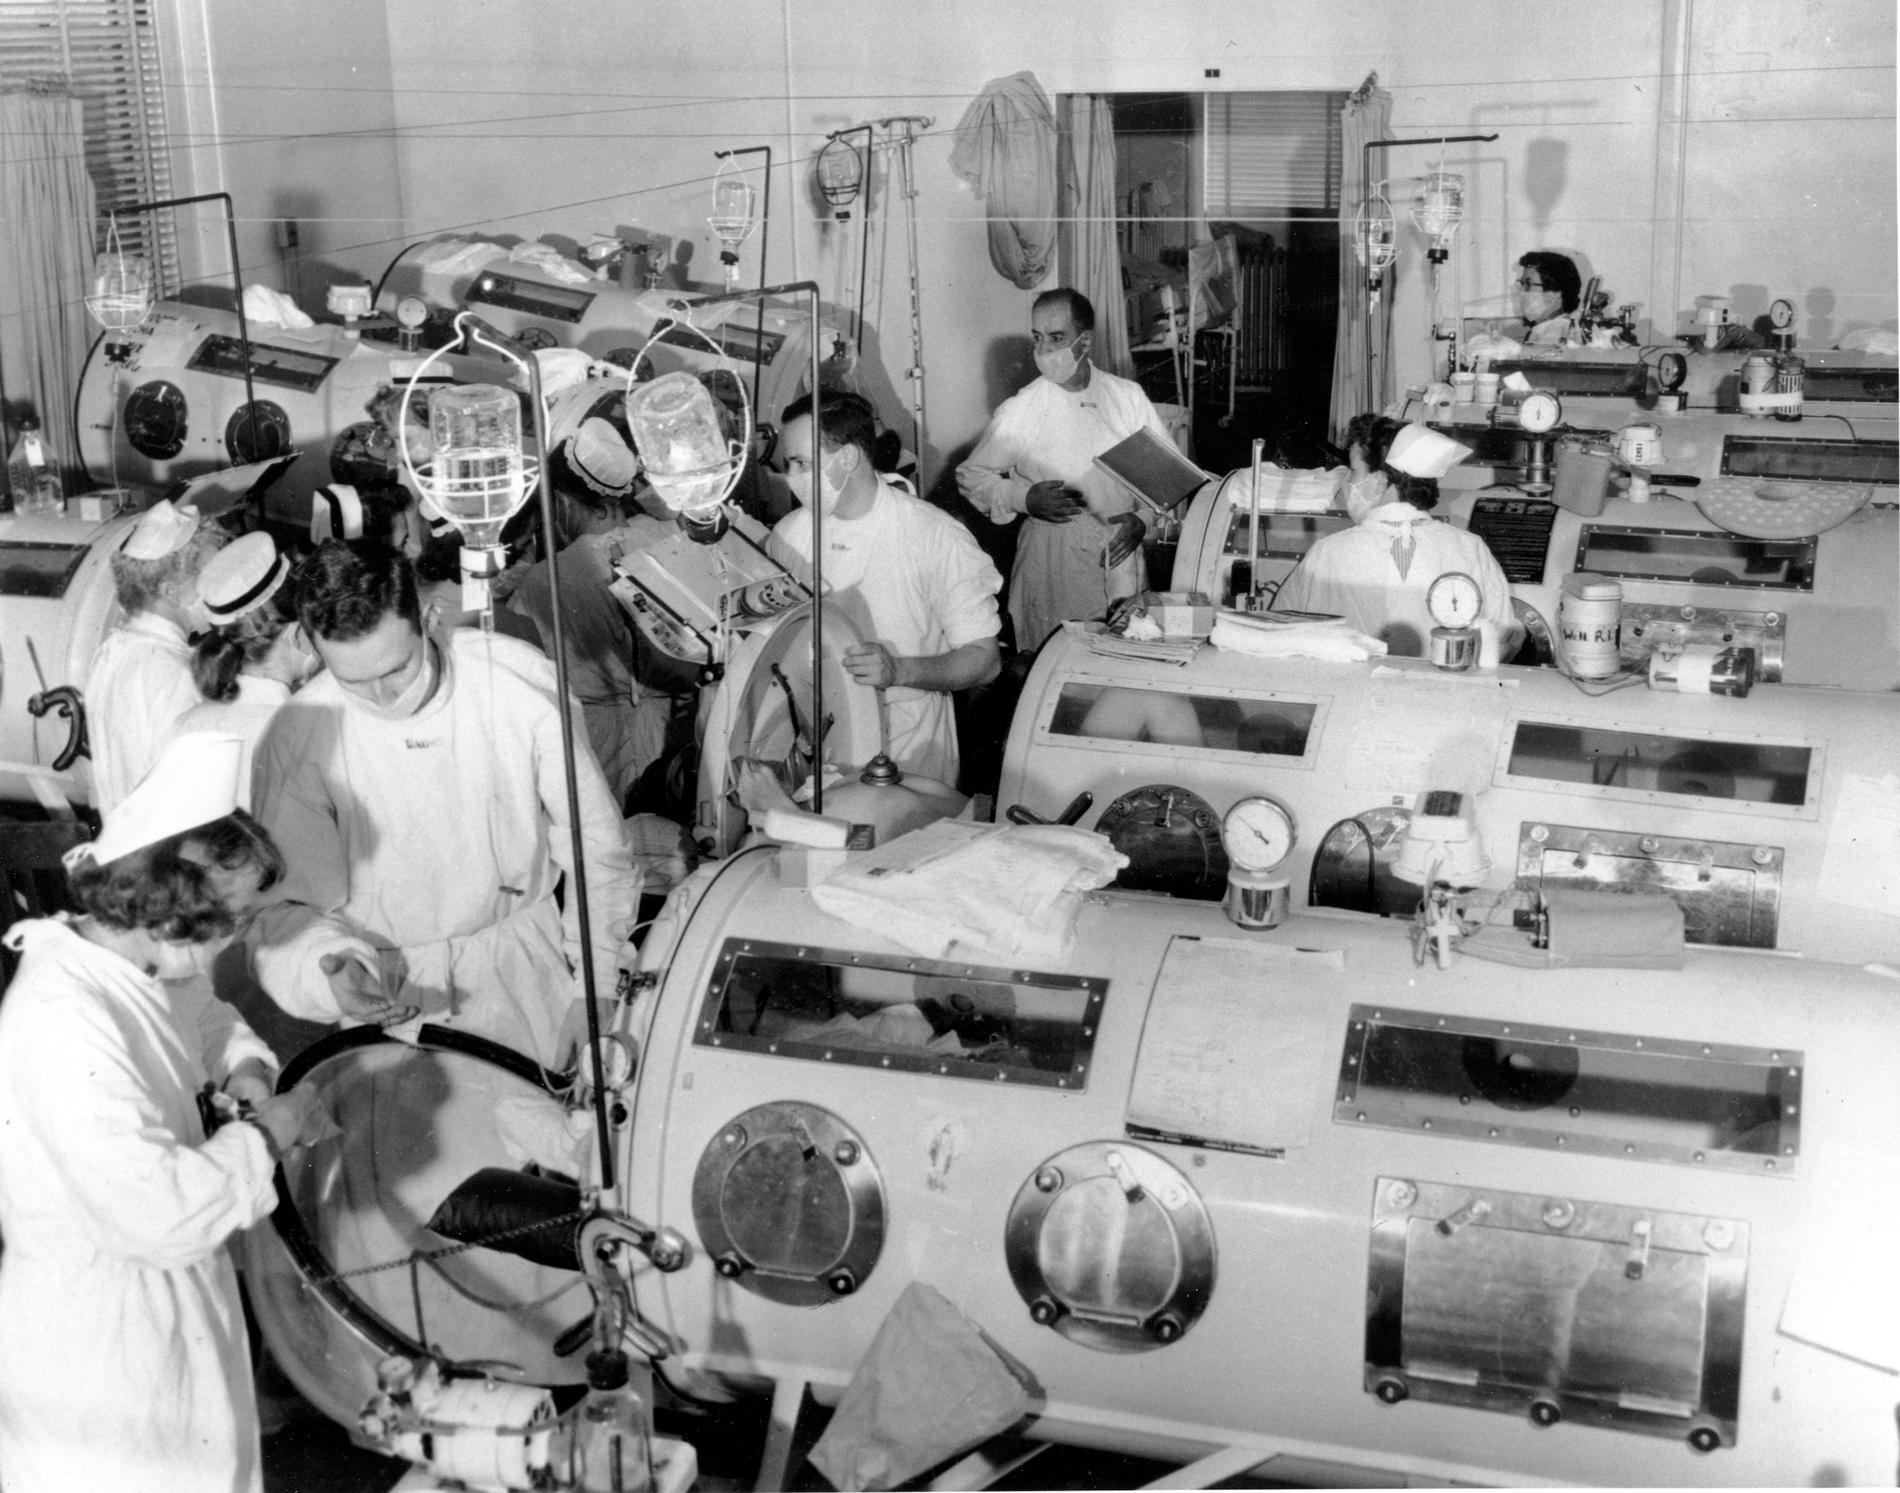 Arkivbild från 1955 på poliopatienter i järnlungor på en intensivavdelning i Boston, USA.